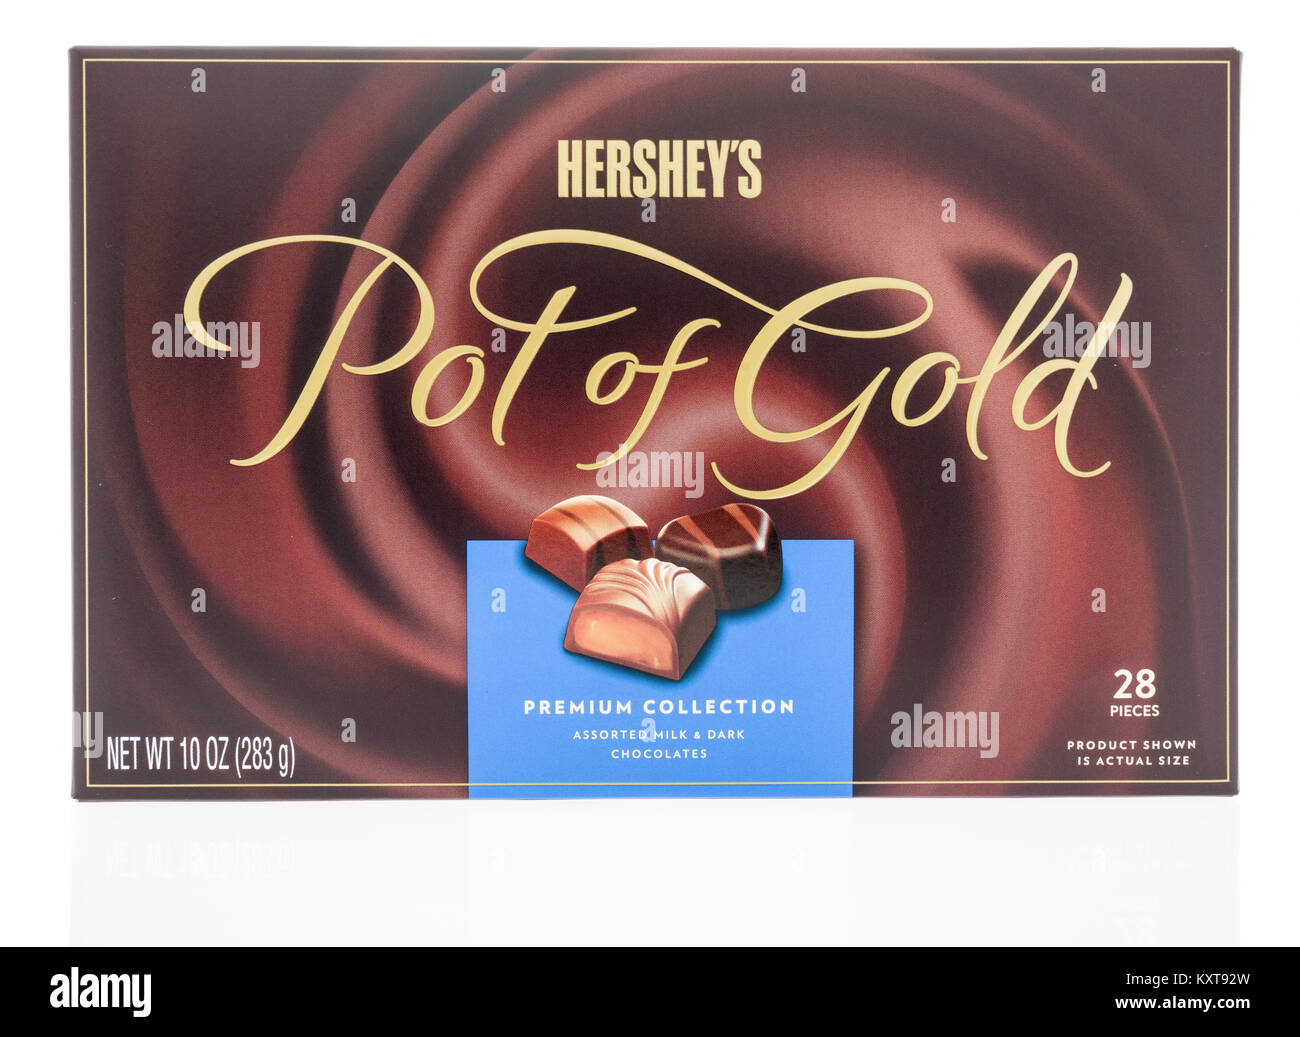 Winneconne, WI - 30 décembre 2017 : une boîte de Hershey's Pot of Gold PREMIUM Collection le lait et le chocolat noir sur un arrière-plan assortmant isolés. Banque D'Images